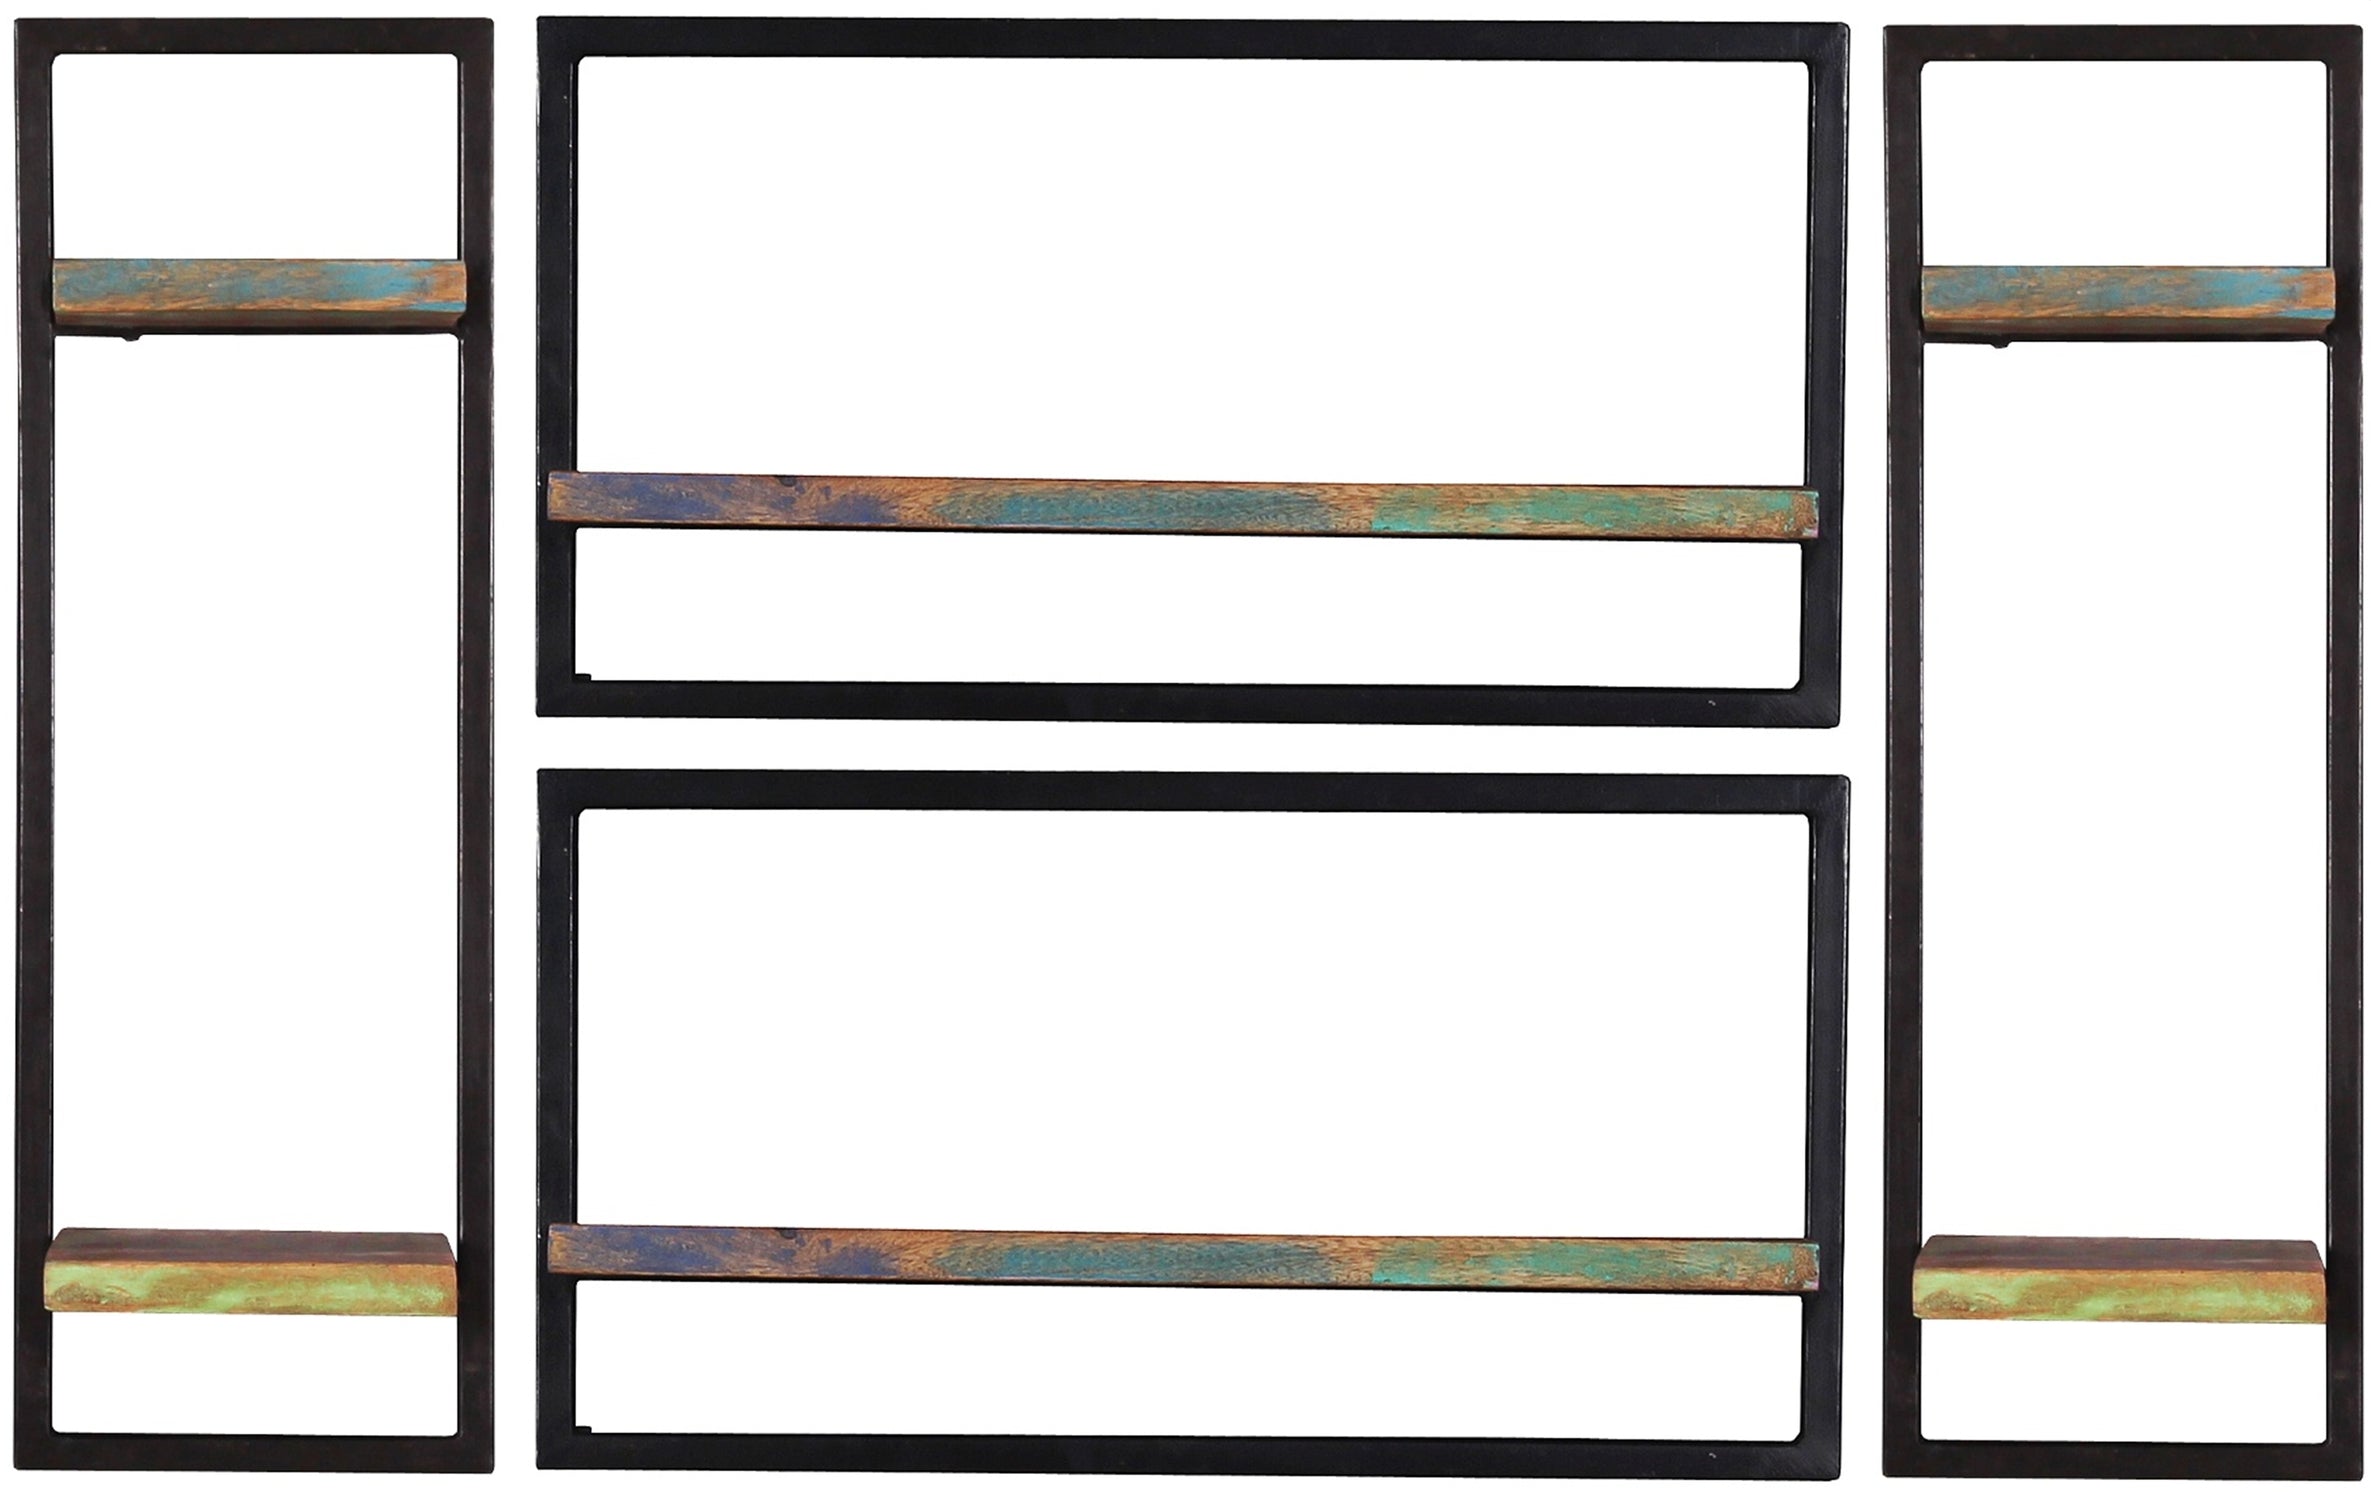 TPFLiving Wandregal-Set, 4-teilig Anchorage Altholz mit starken Gebrauchsspuren, lackiert, Rahmen aus Metall bunt, schwarz